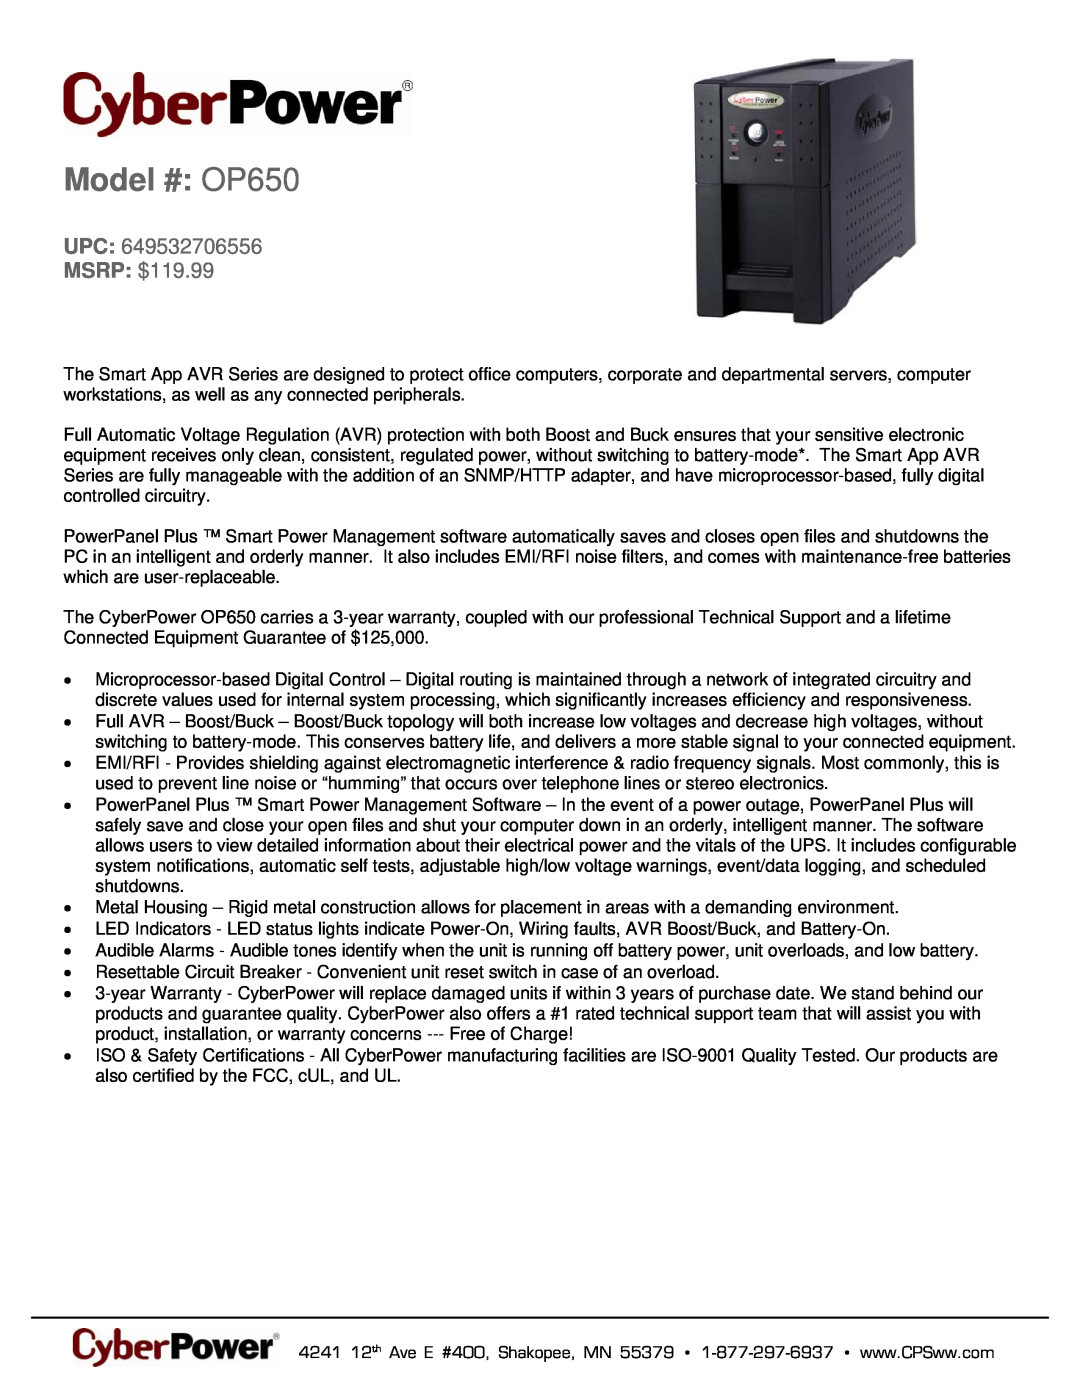 CyberPower Systems 649532706556 warranty Model # OP650, UPC MSRP $119.99 